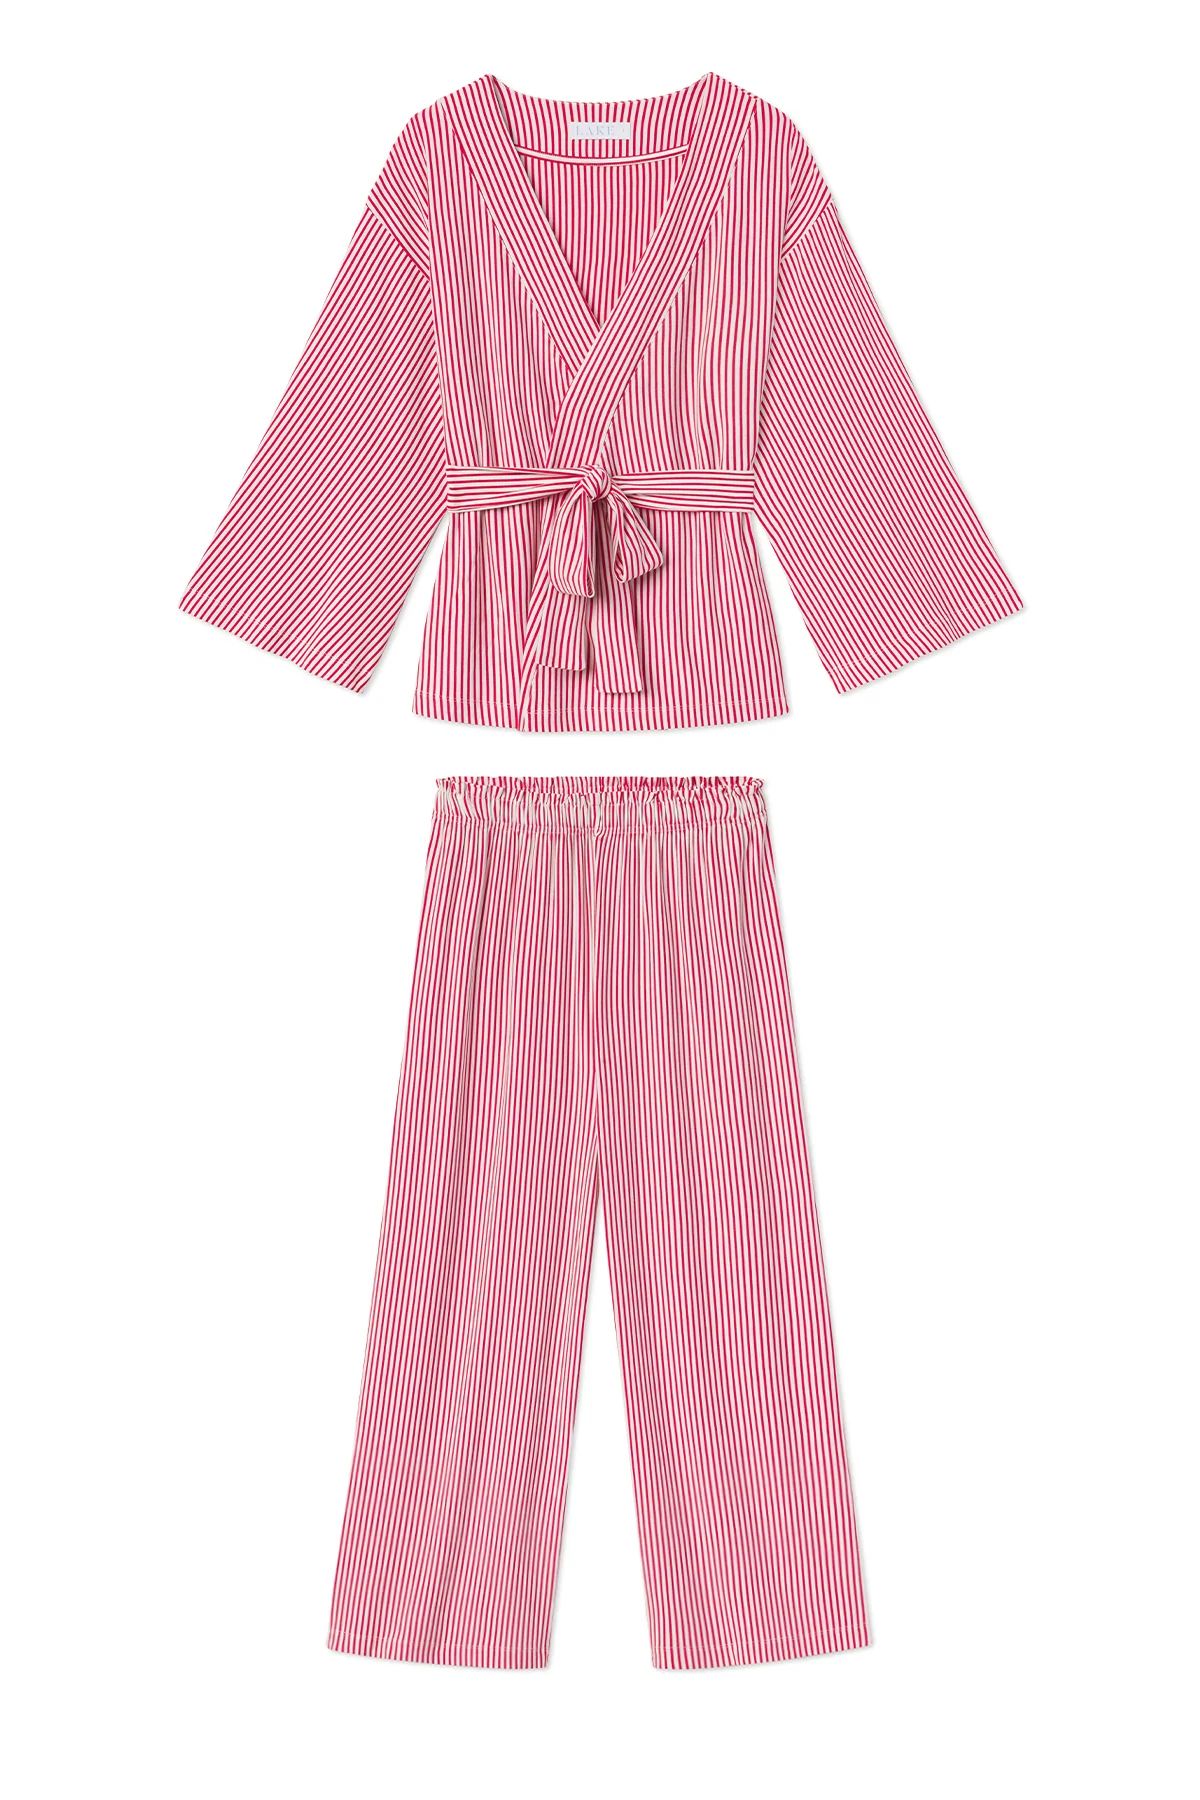 DreamKnit Kimono Pajama Set in Red Stripe | Lake Pajamas